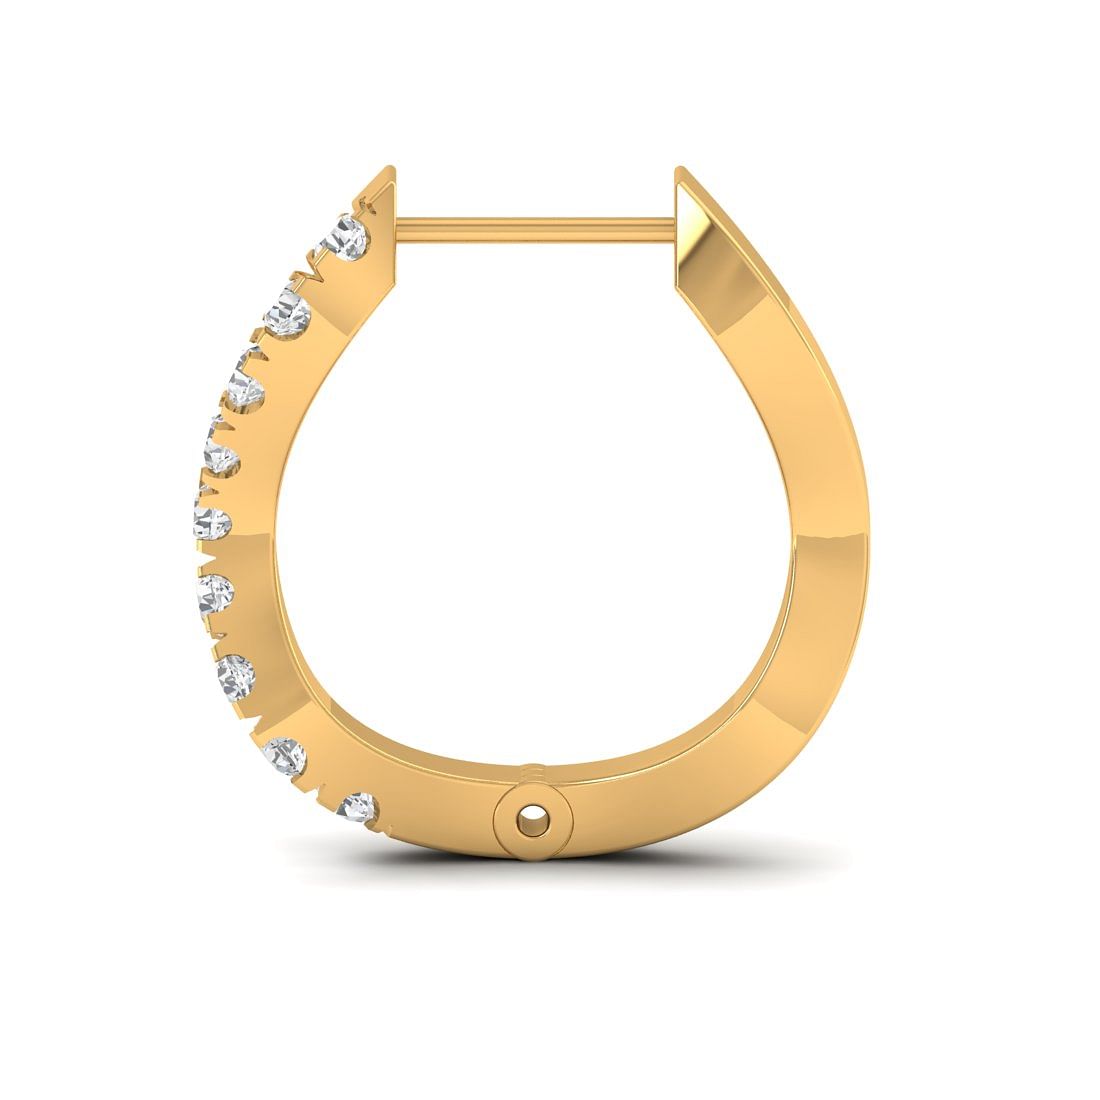 14k Yellow Gold Shanaya Diamond Earrings for wedding